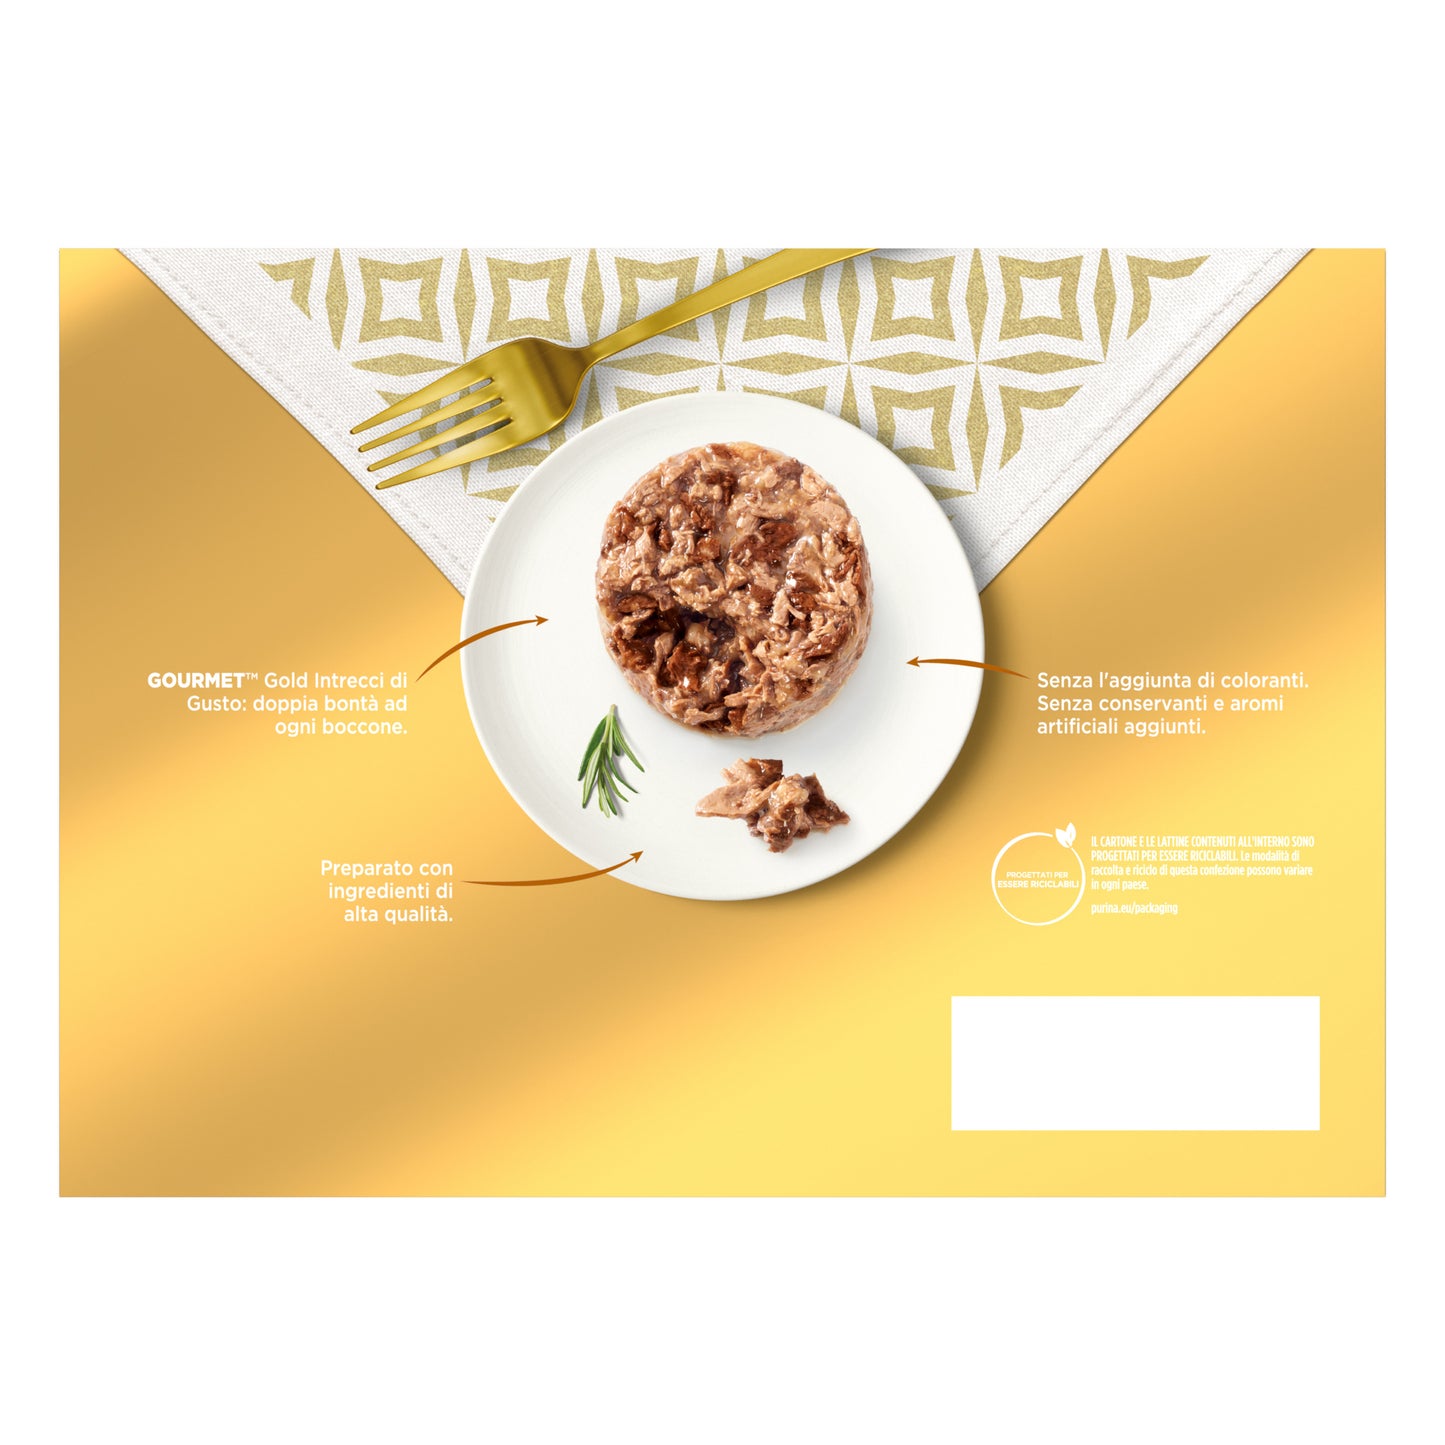 Purina - Gourmet Gold Gatto Mix Intrecci di Gusto Formato Convenienza Multipack 24x85g